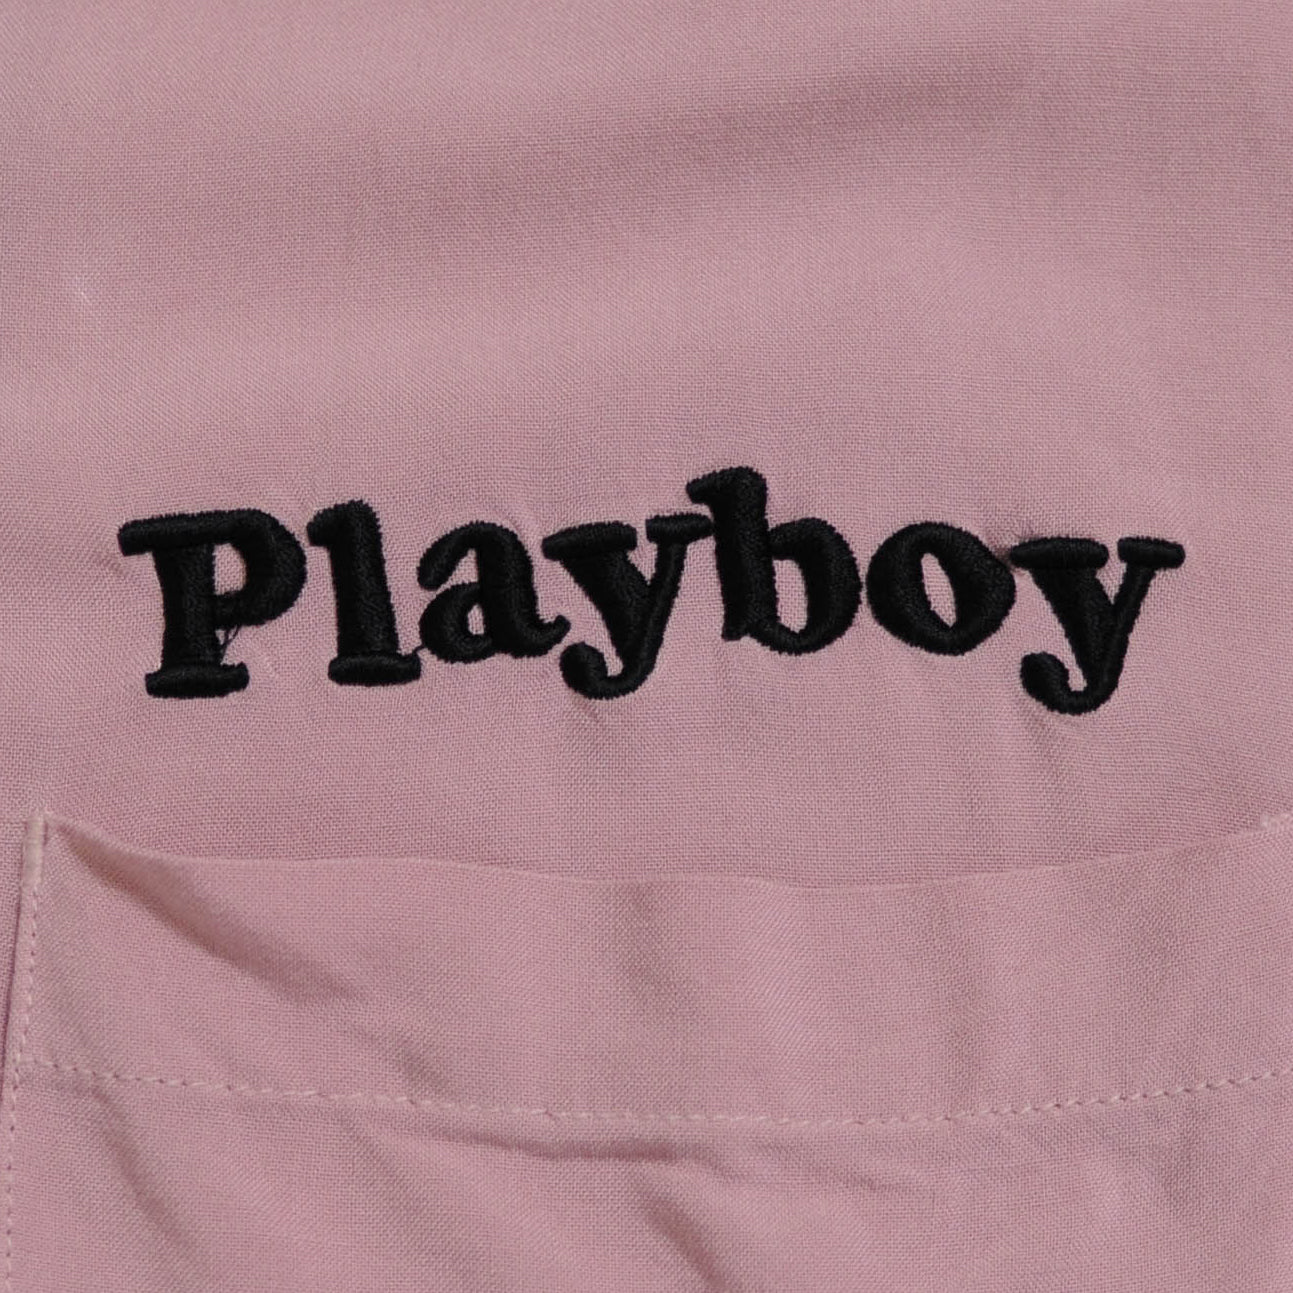 PLAYBOY オープンカラーシャツ ピンク(L)/A3733SH-SO